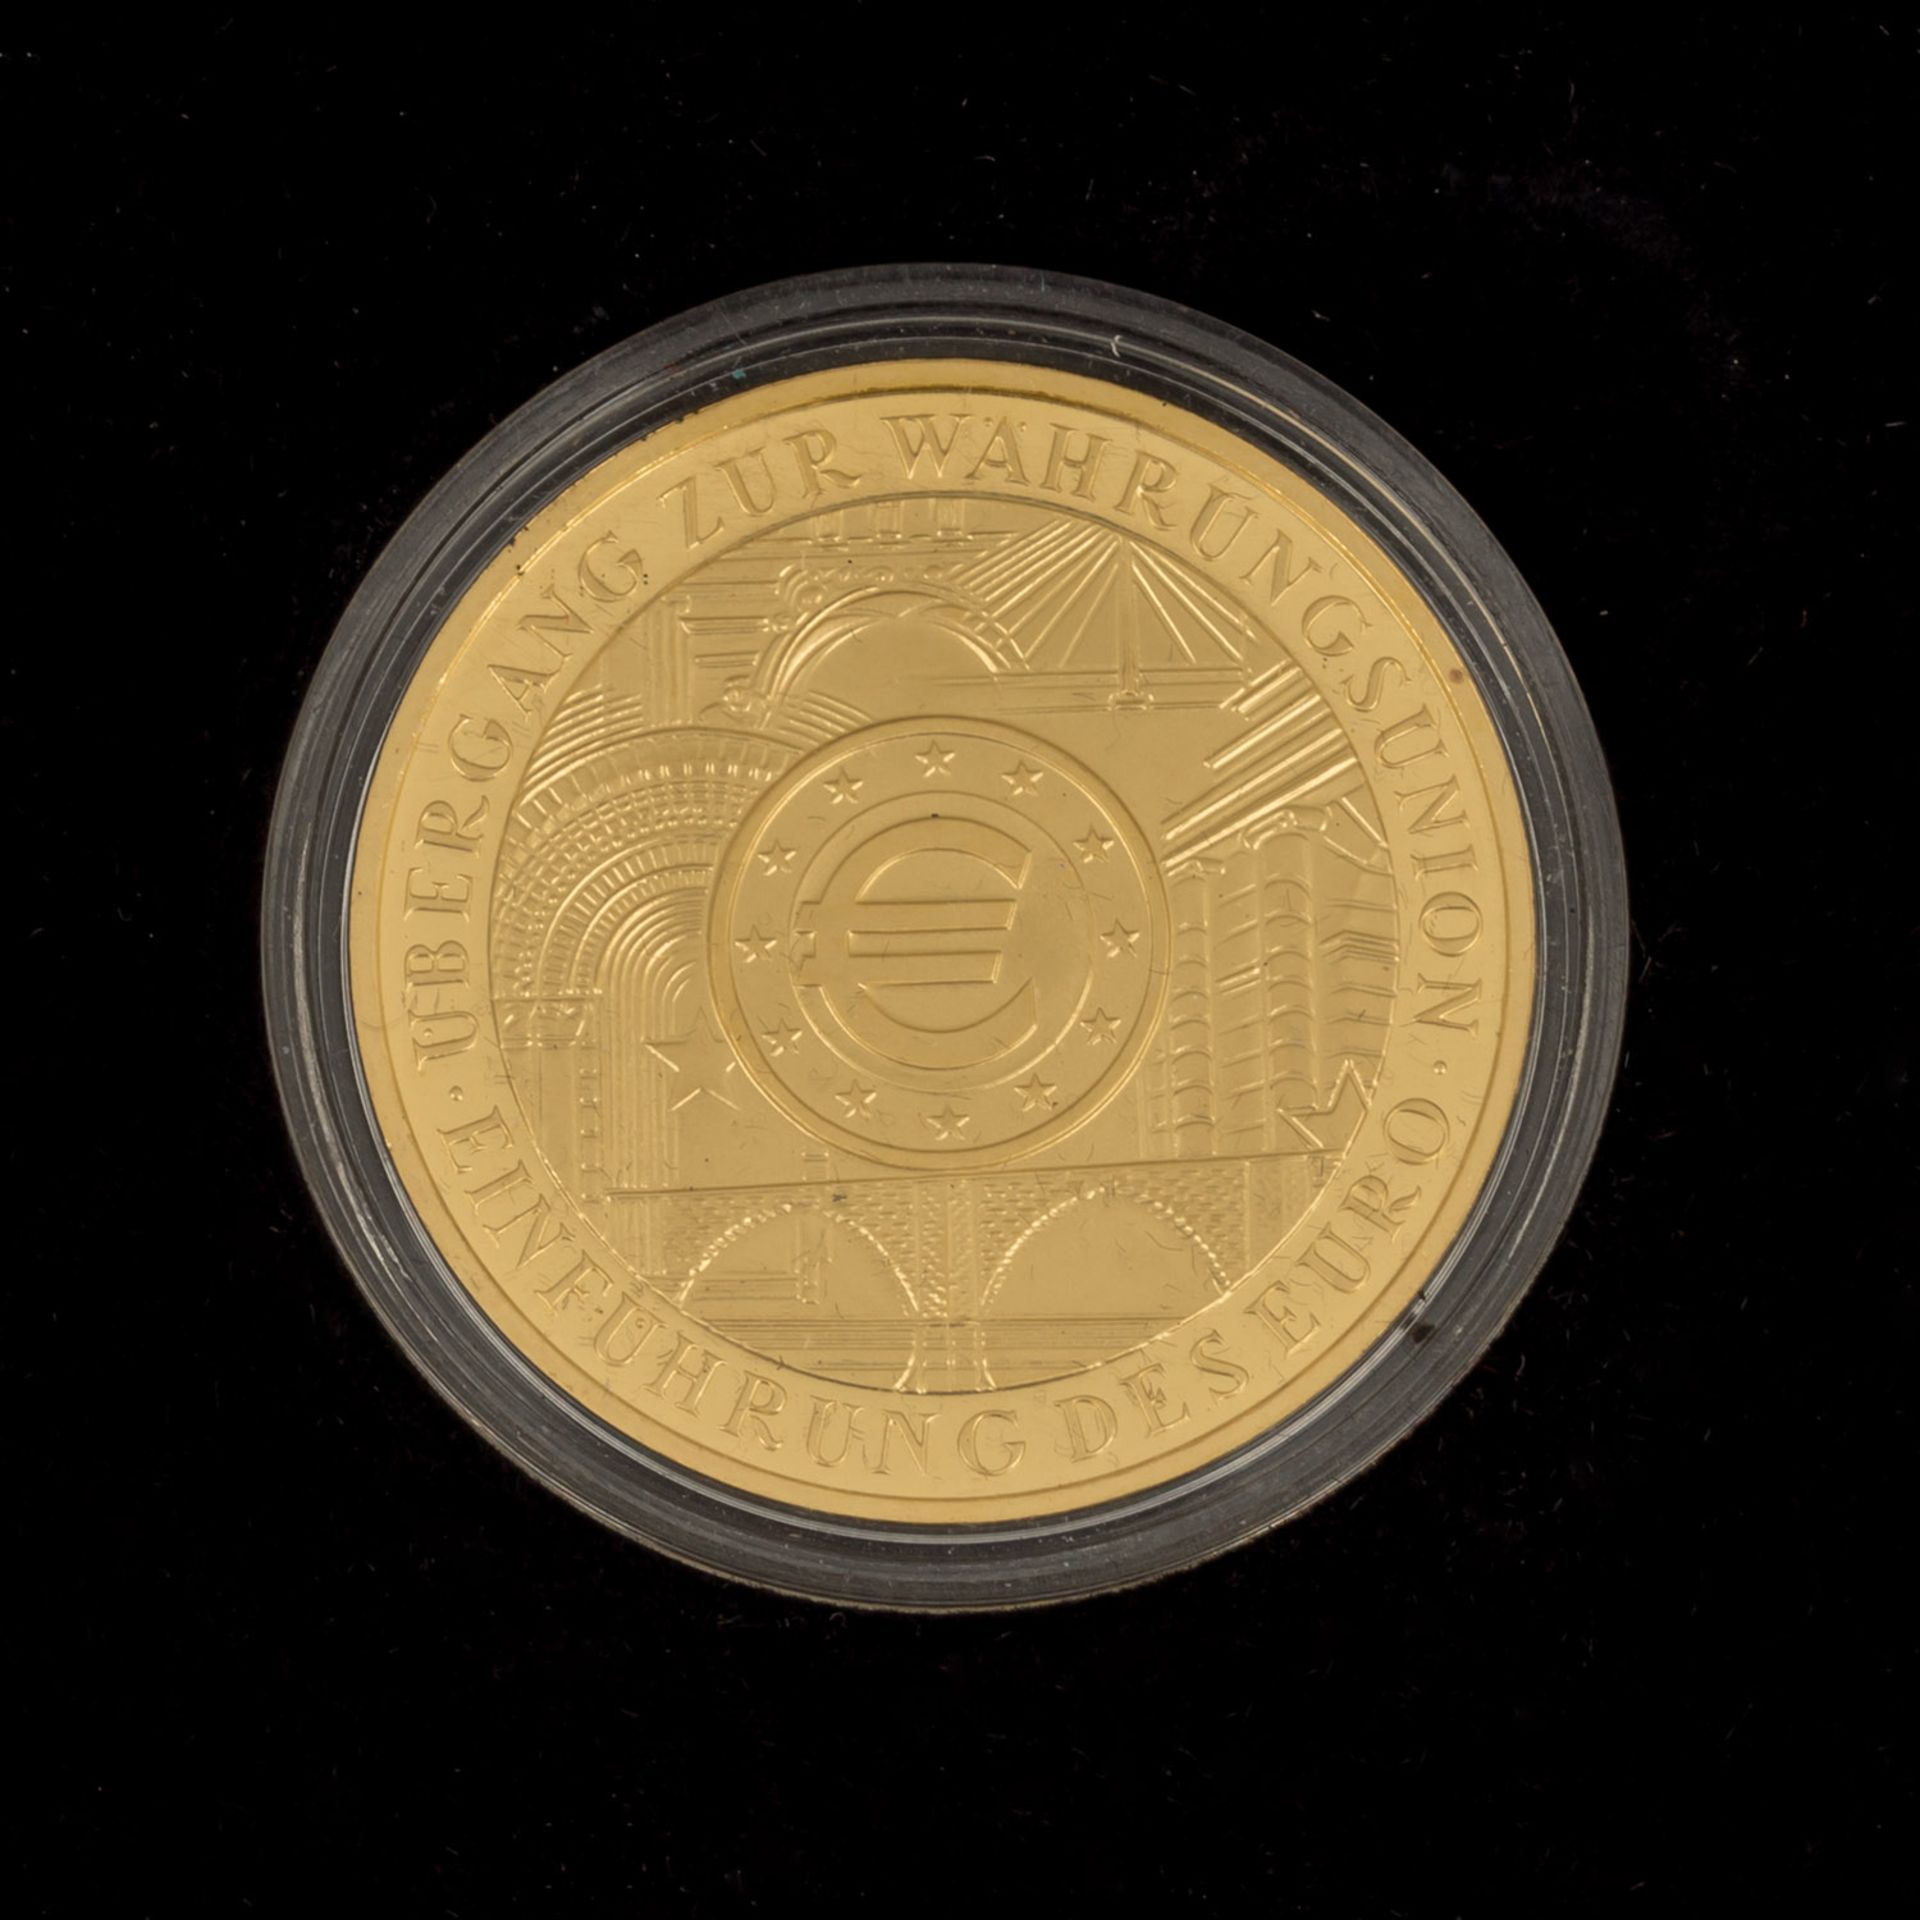 BRD/GOLD - Begehrtes und seltenes 200 Euro 2002 G Währungsunion, 1 Unze fein, Origina - Bild 3 aus 3